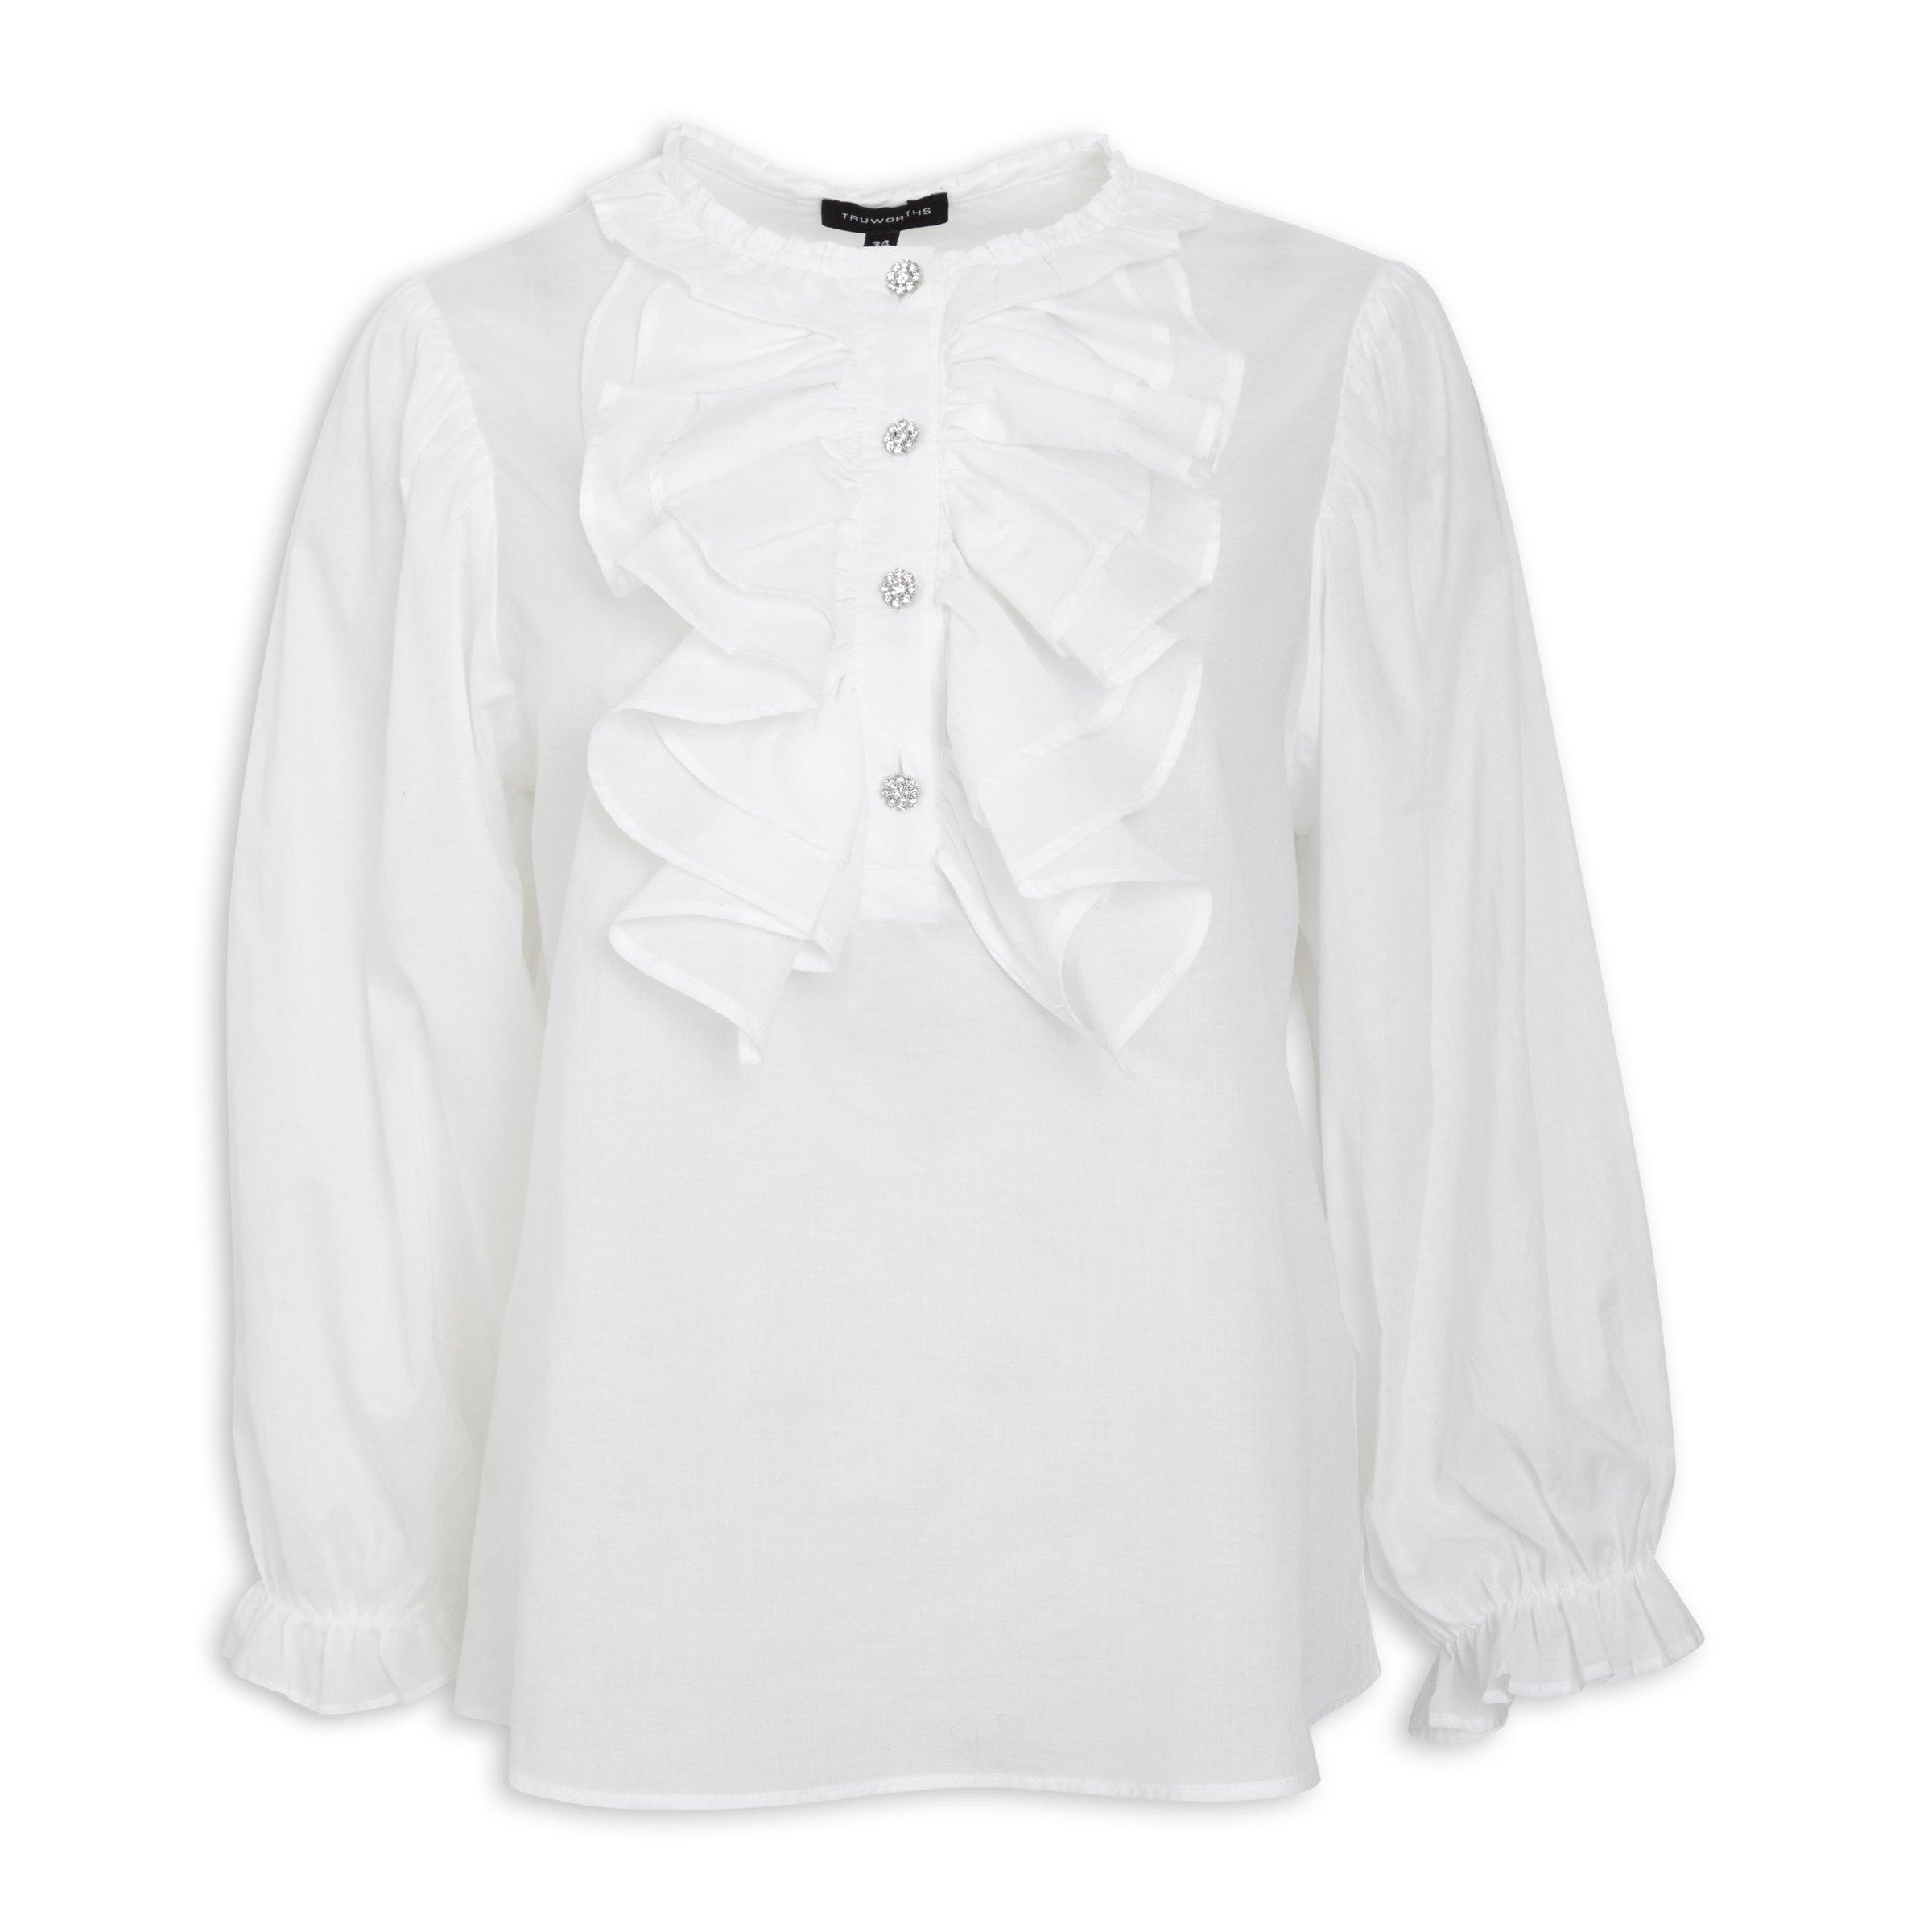 White ruffle blouse long sleeve